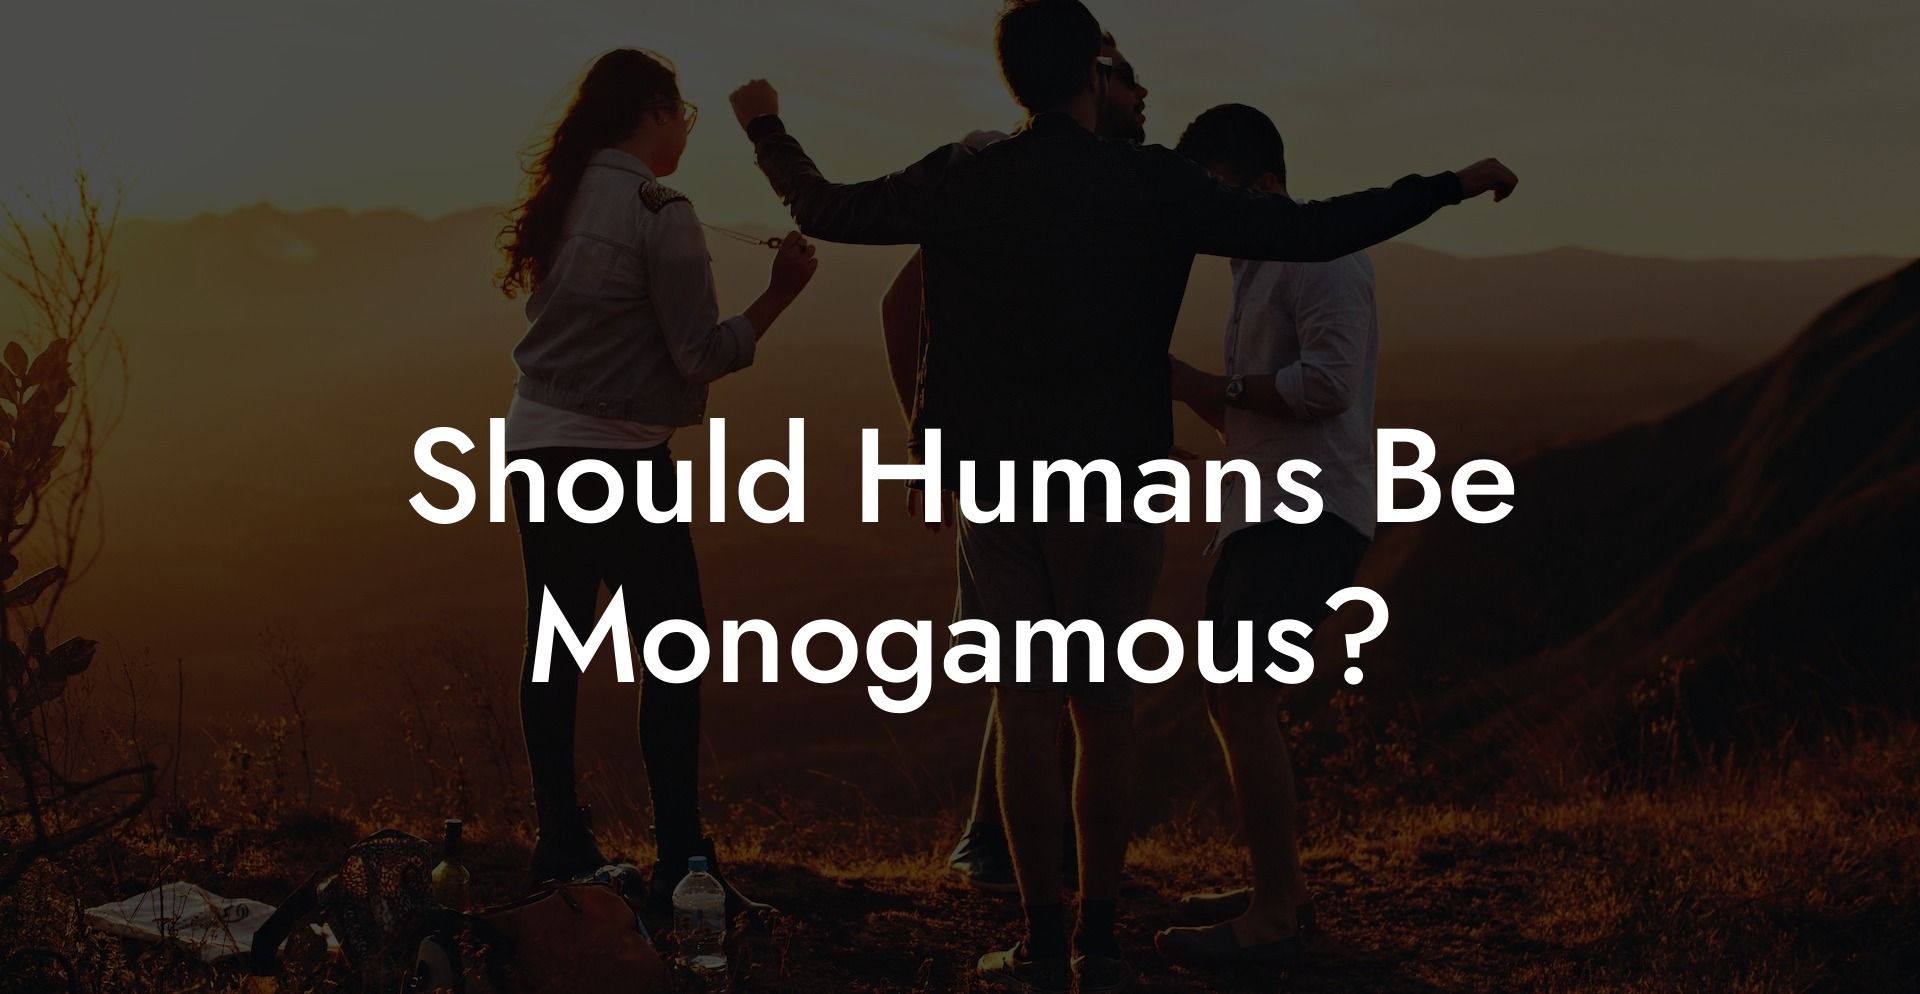 Should Humans Be Monogamous?